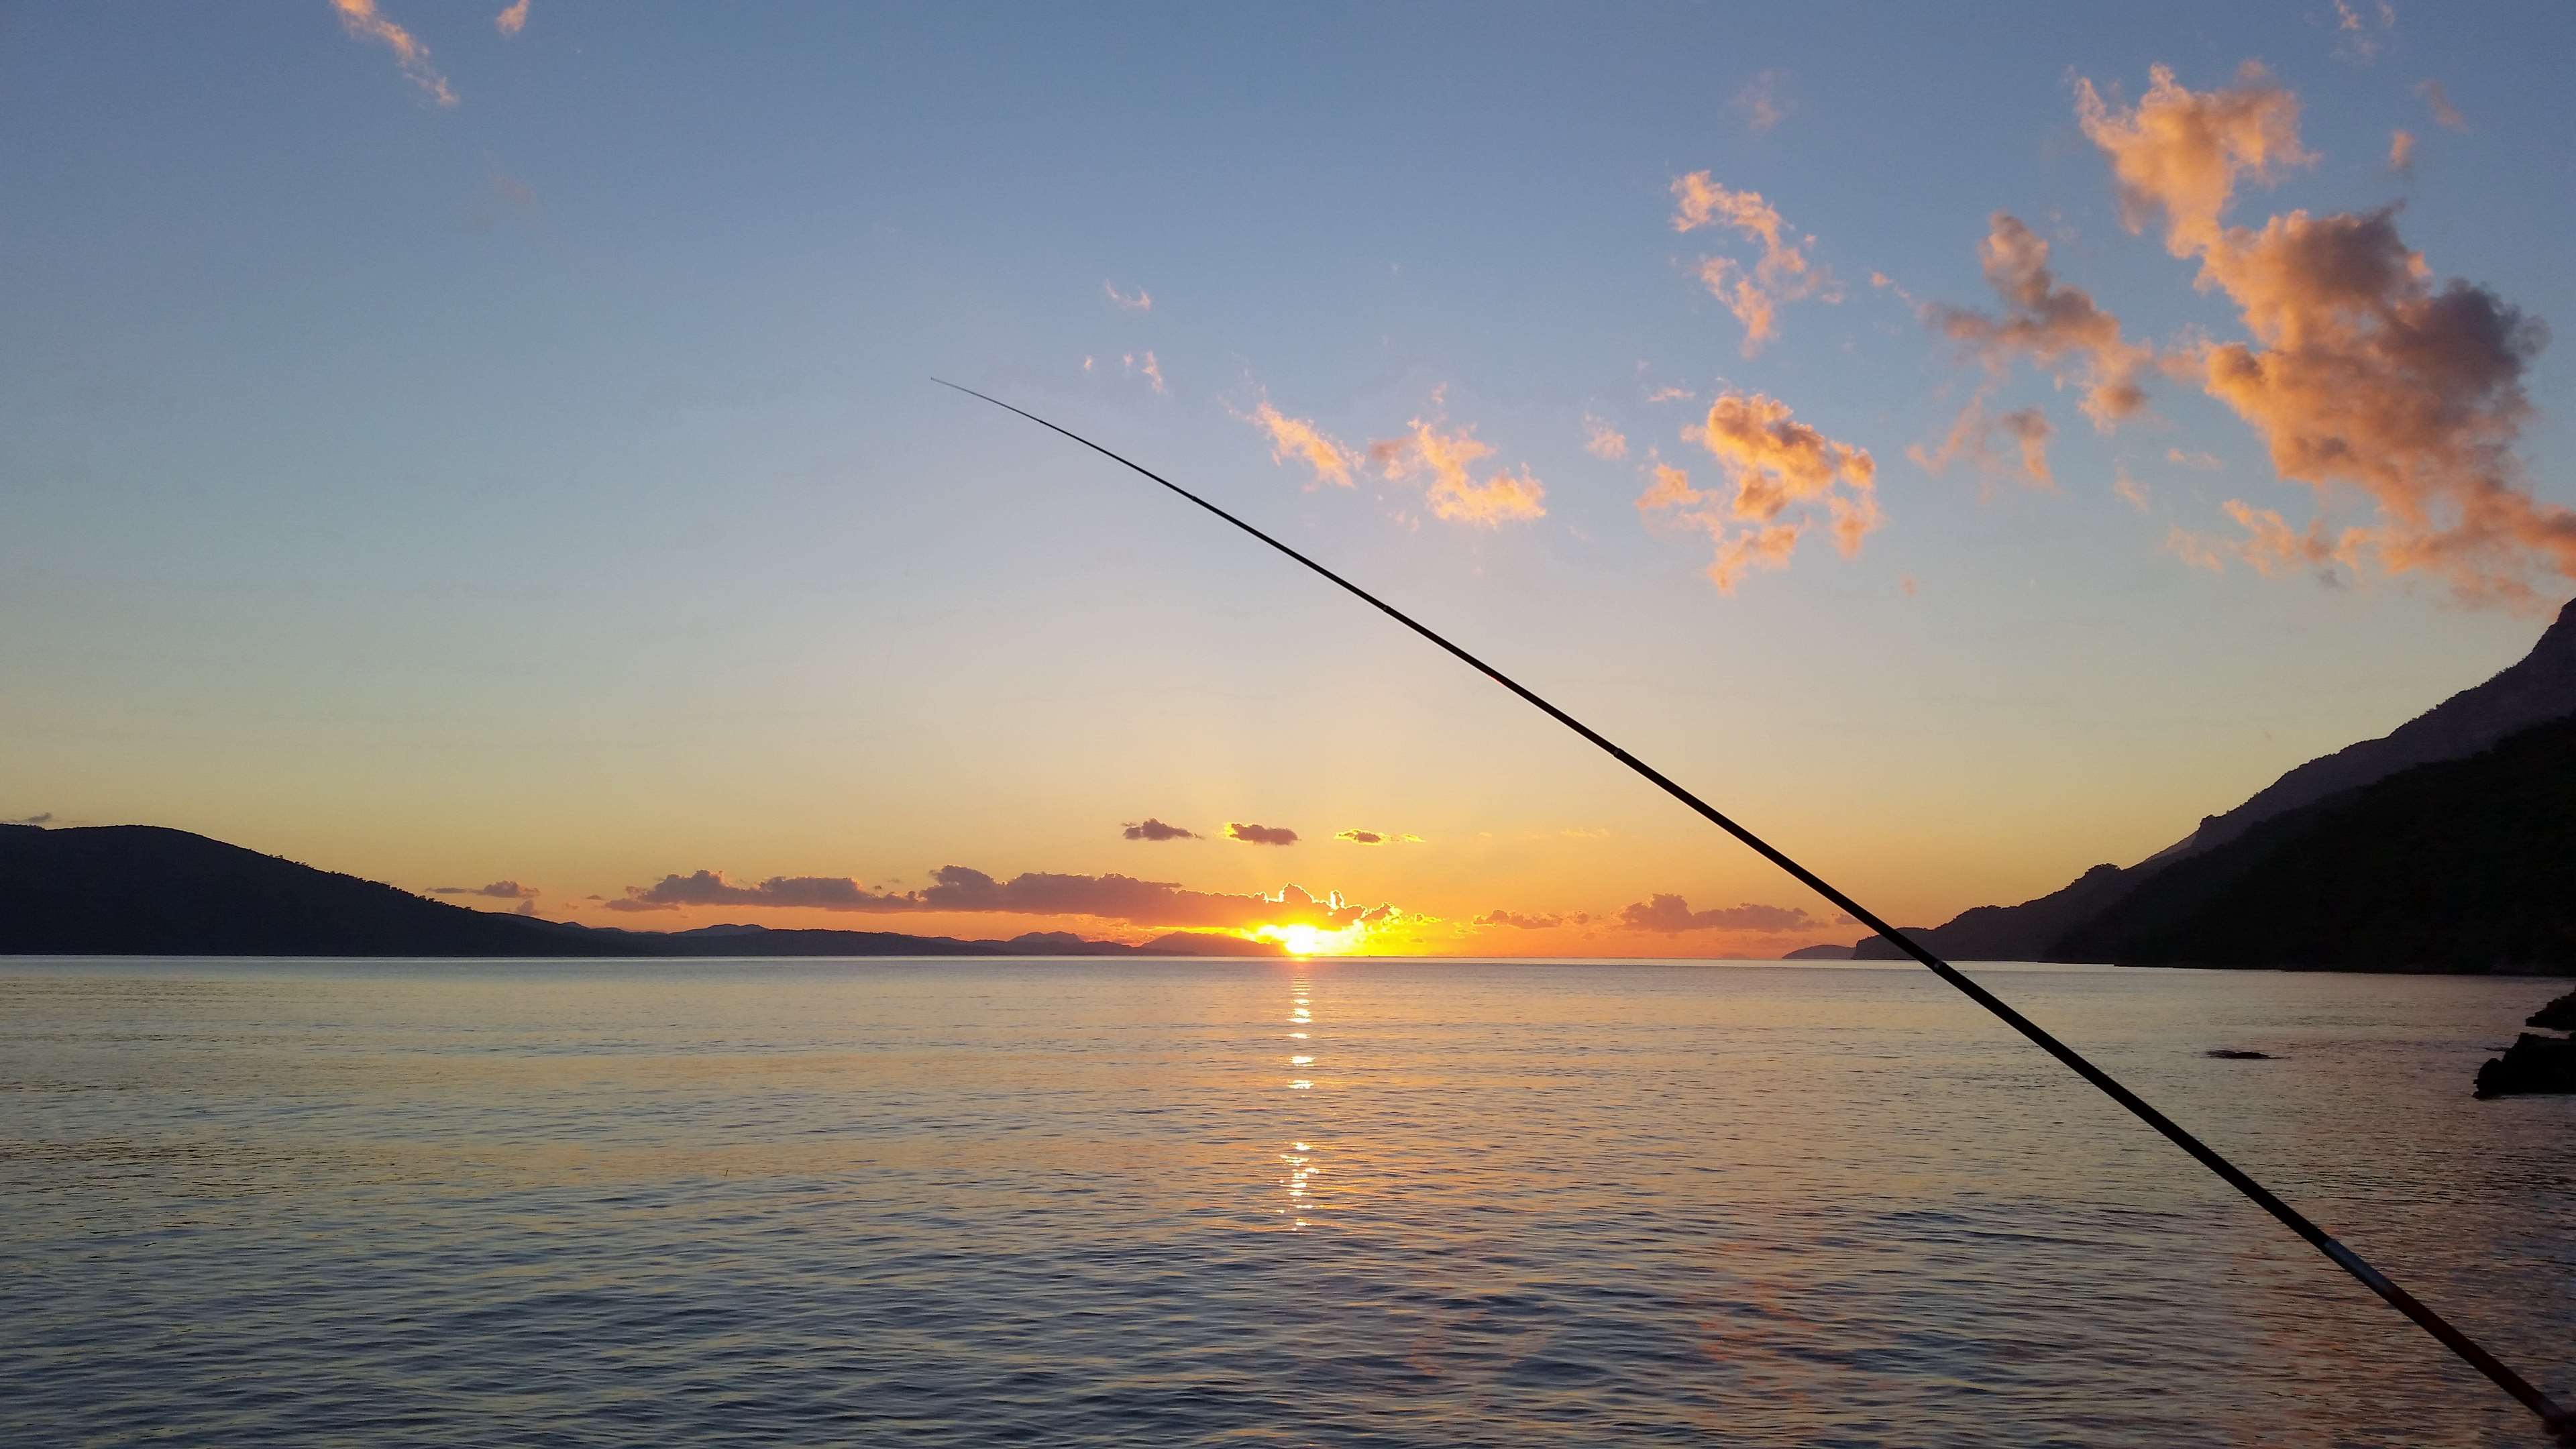 3840x2160 afternoon, bay, fishing, lake, peaceful, shore, sunset, water 4k wallpaper JPG 471 kB. Mocah.org HD Desktop Wallpaper